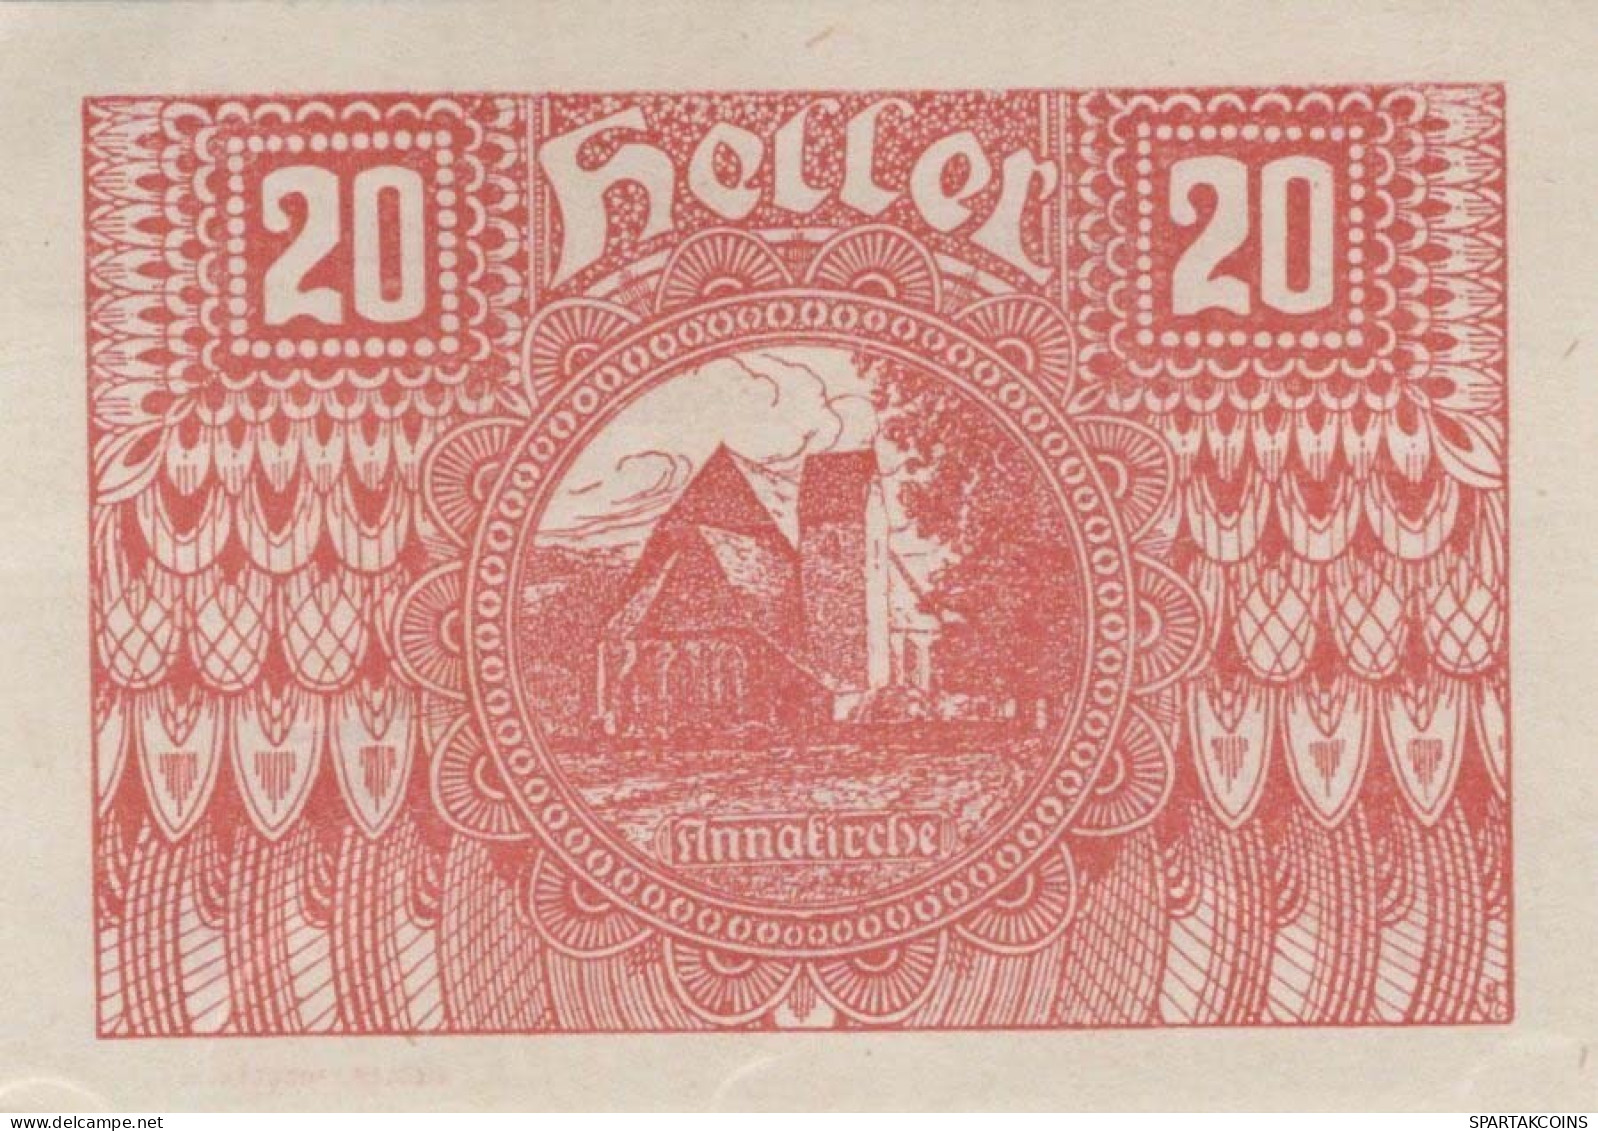 20 HELLER 1920 Stadt PoGGSTALL Niedrigeren Österreich Notgeld Banknote #PE315 - [11] Emisiones Locales